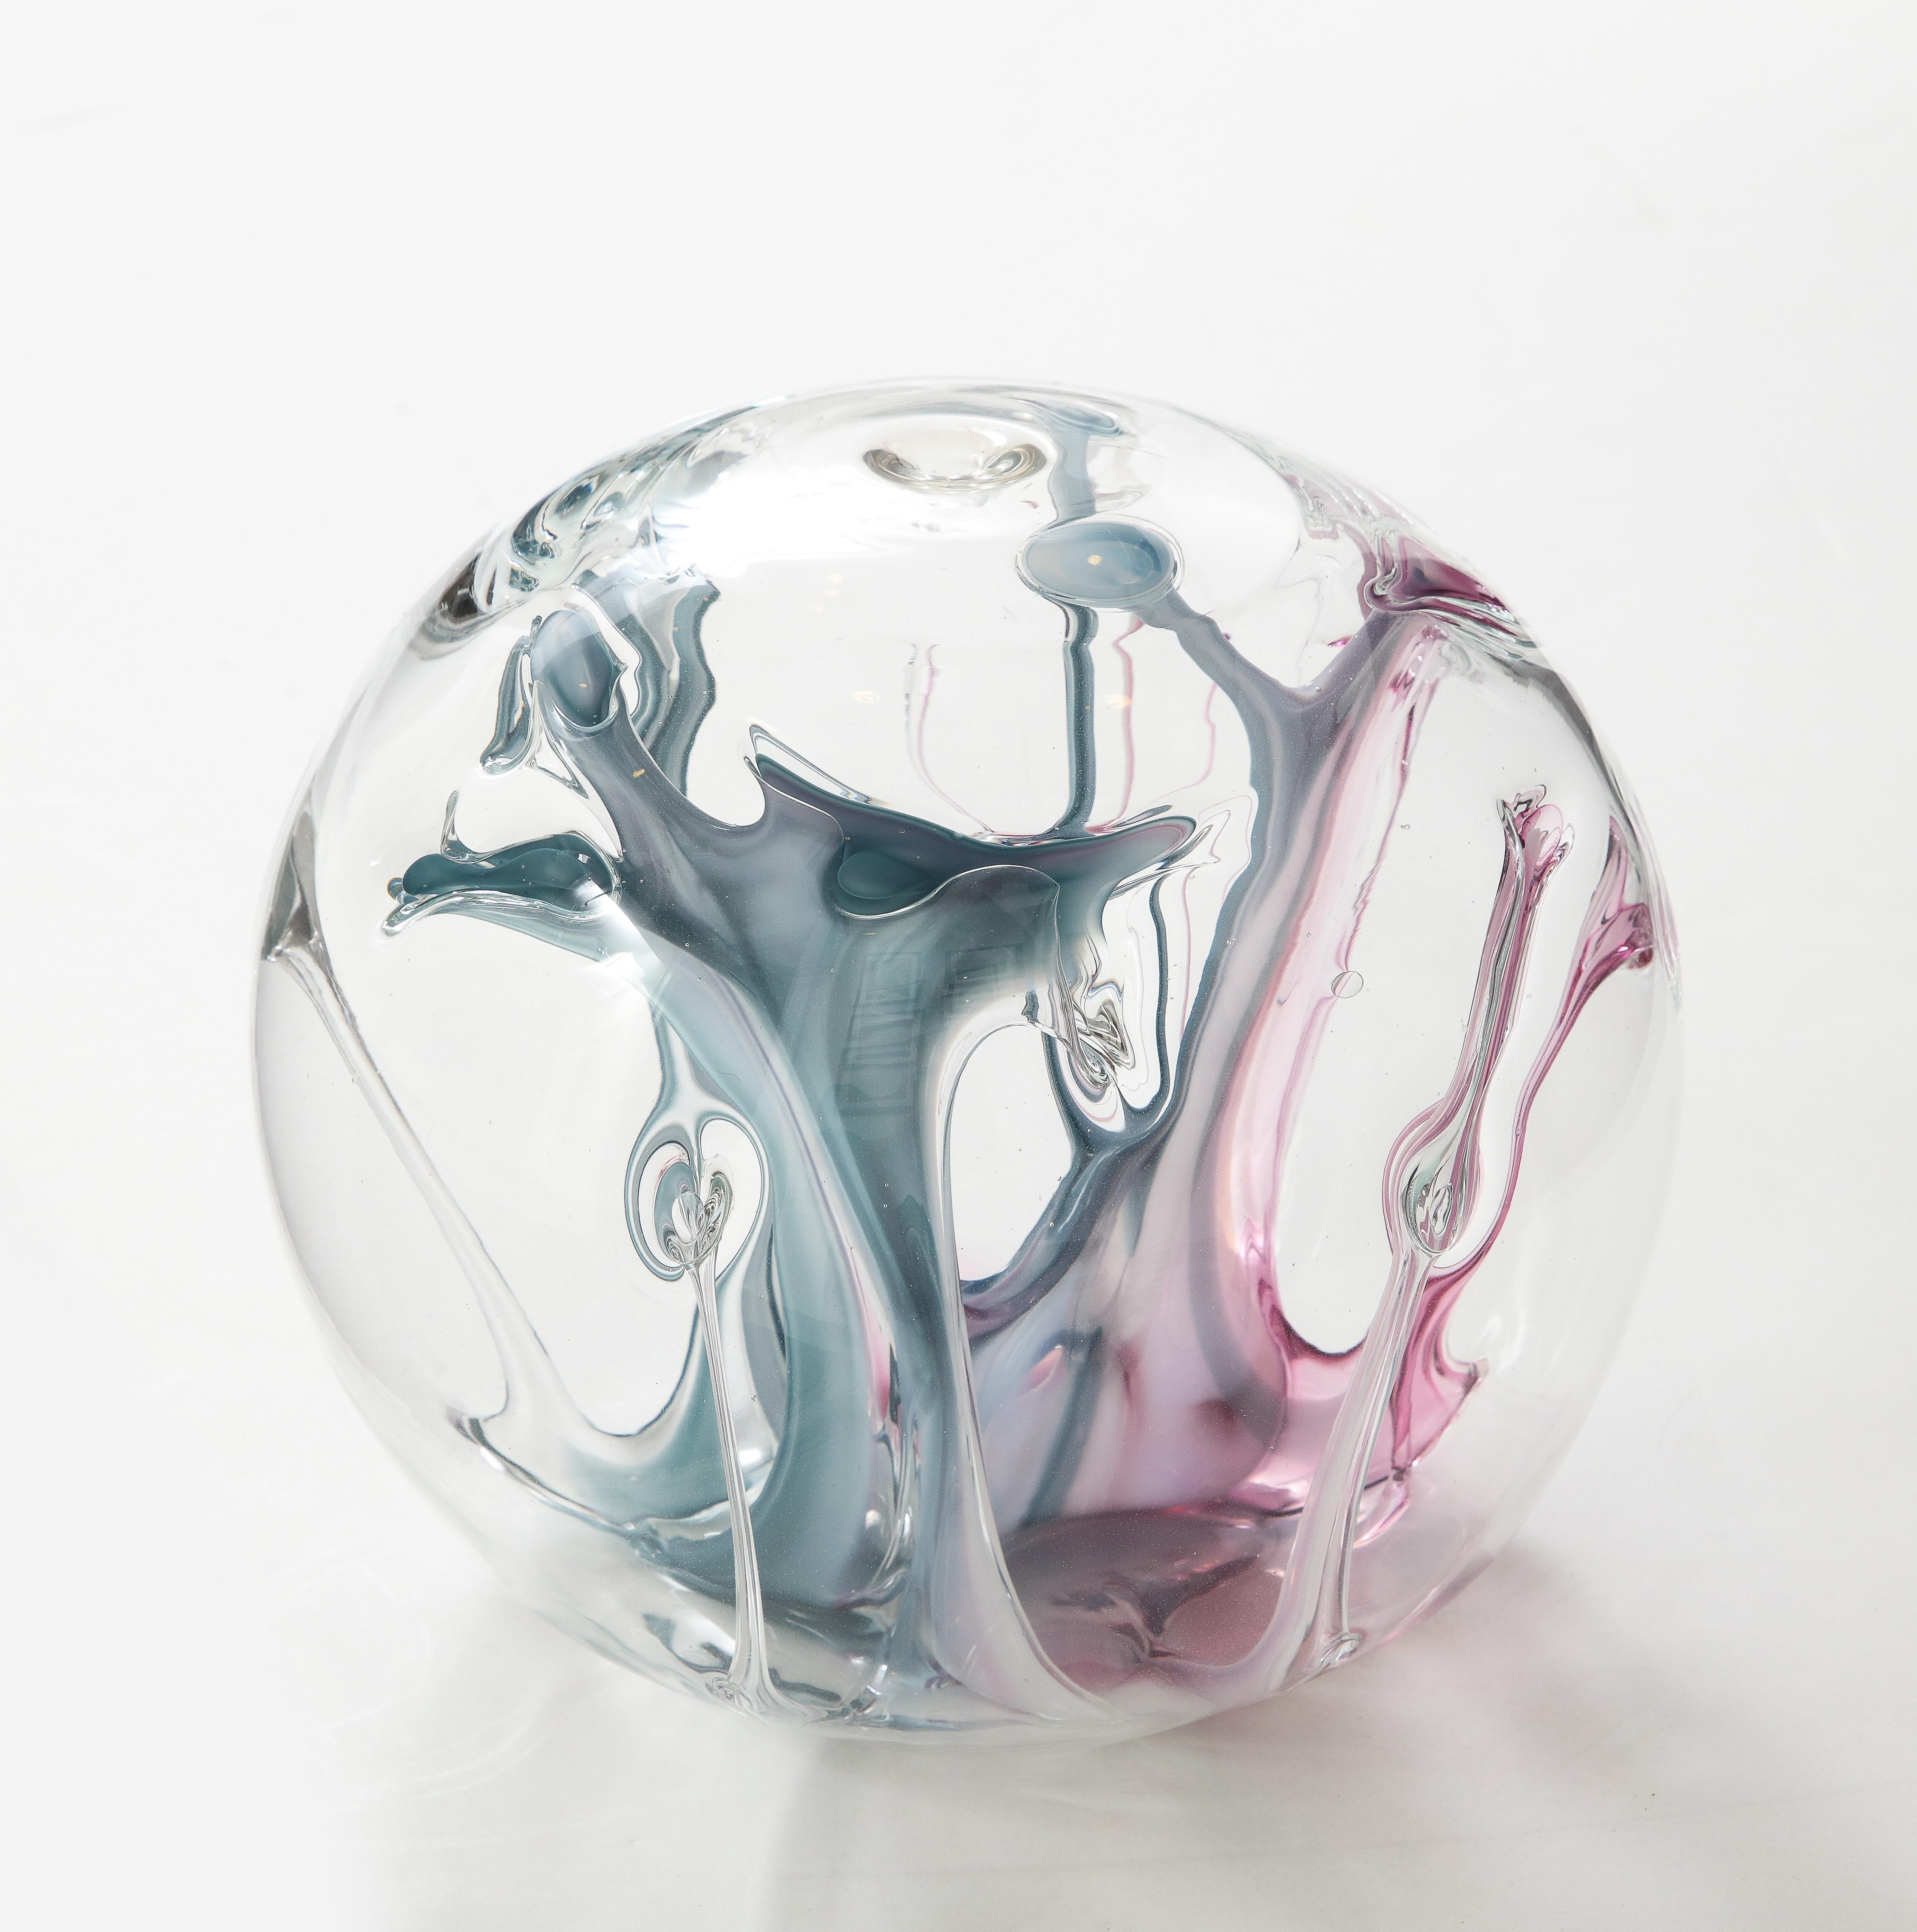 Spektakuläre mundgeblasene Glaskugelskulptur mit magentafarbenen und petrolblauen Glasfäden im Inneren. Unten signiert, Peter Bramhall.